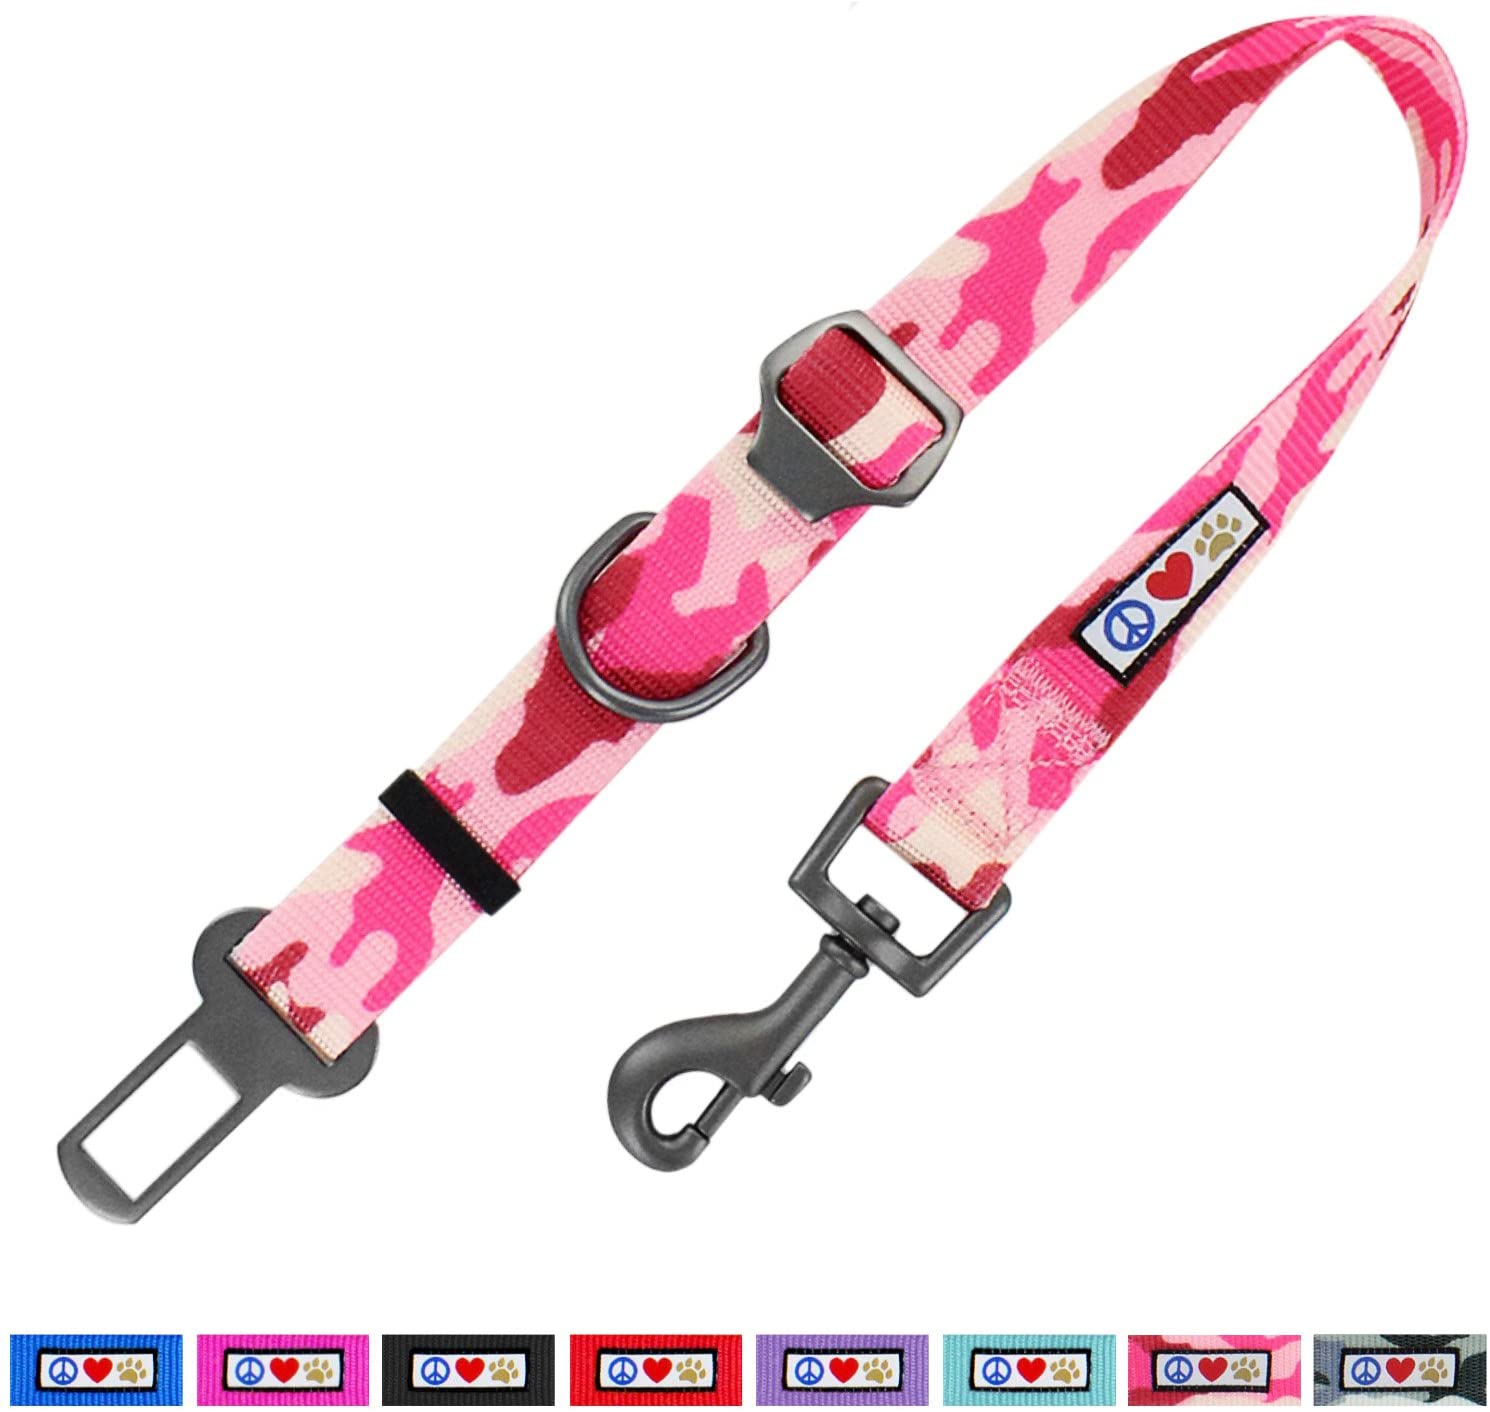  Pawtitas Cinturón de Seguridad de Coche para Perros con Correa de sujeción para Mascotas Color Camuflaje Rosa 